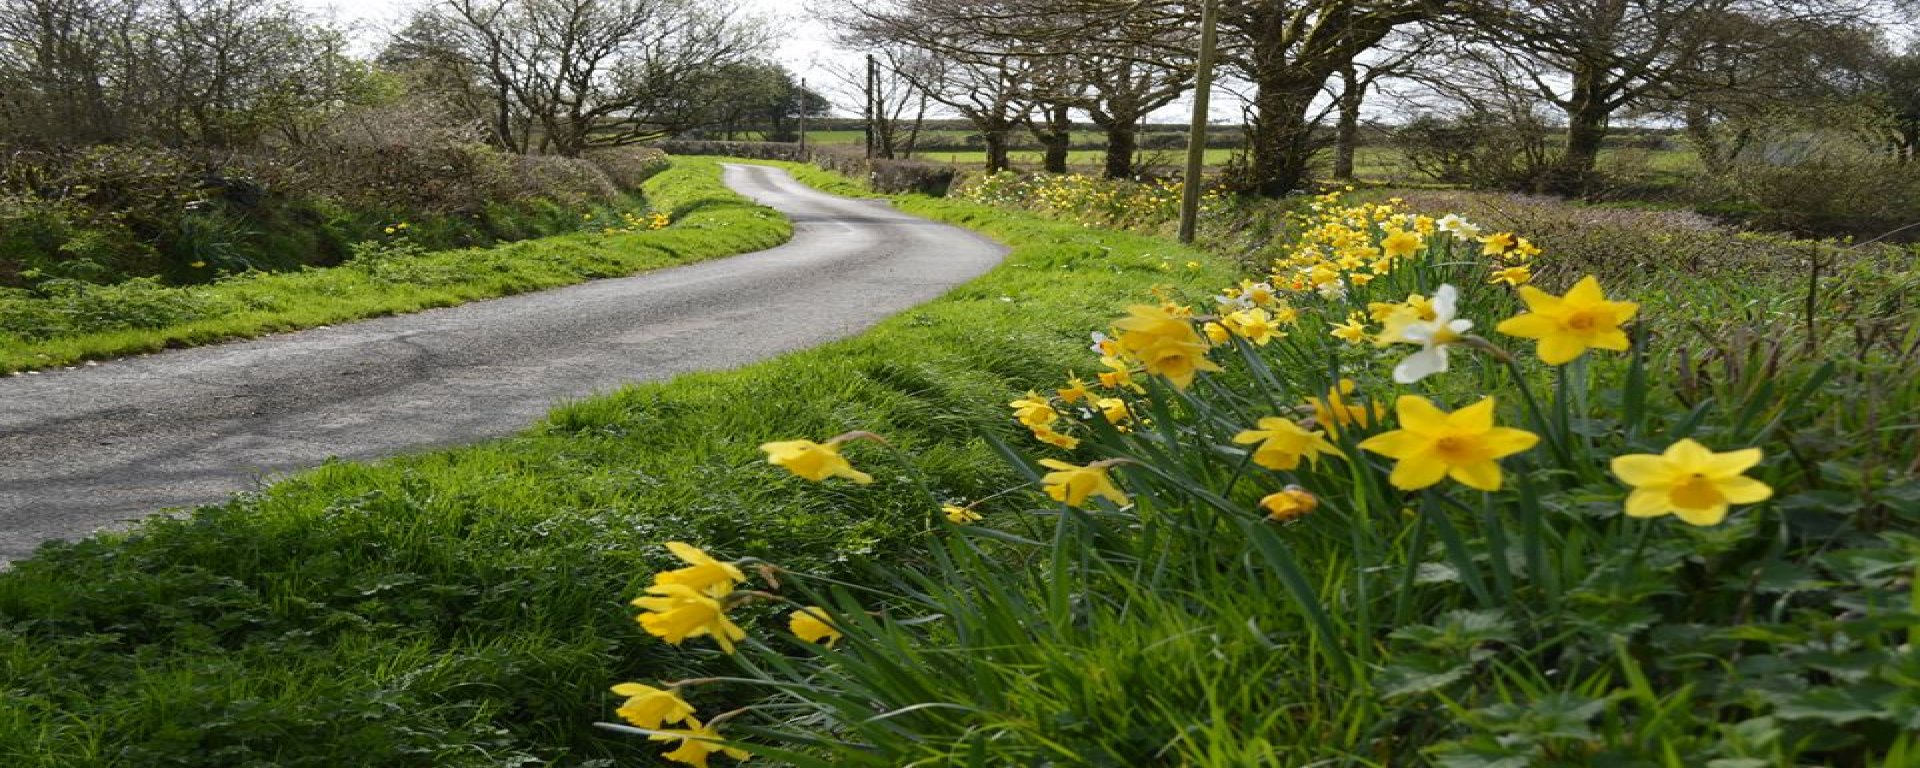 Road side Daffodills